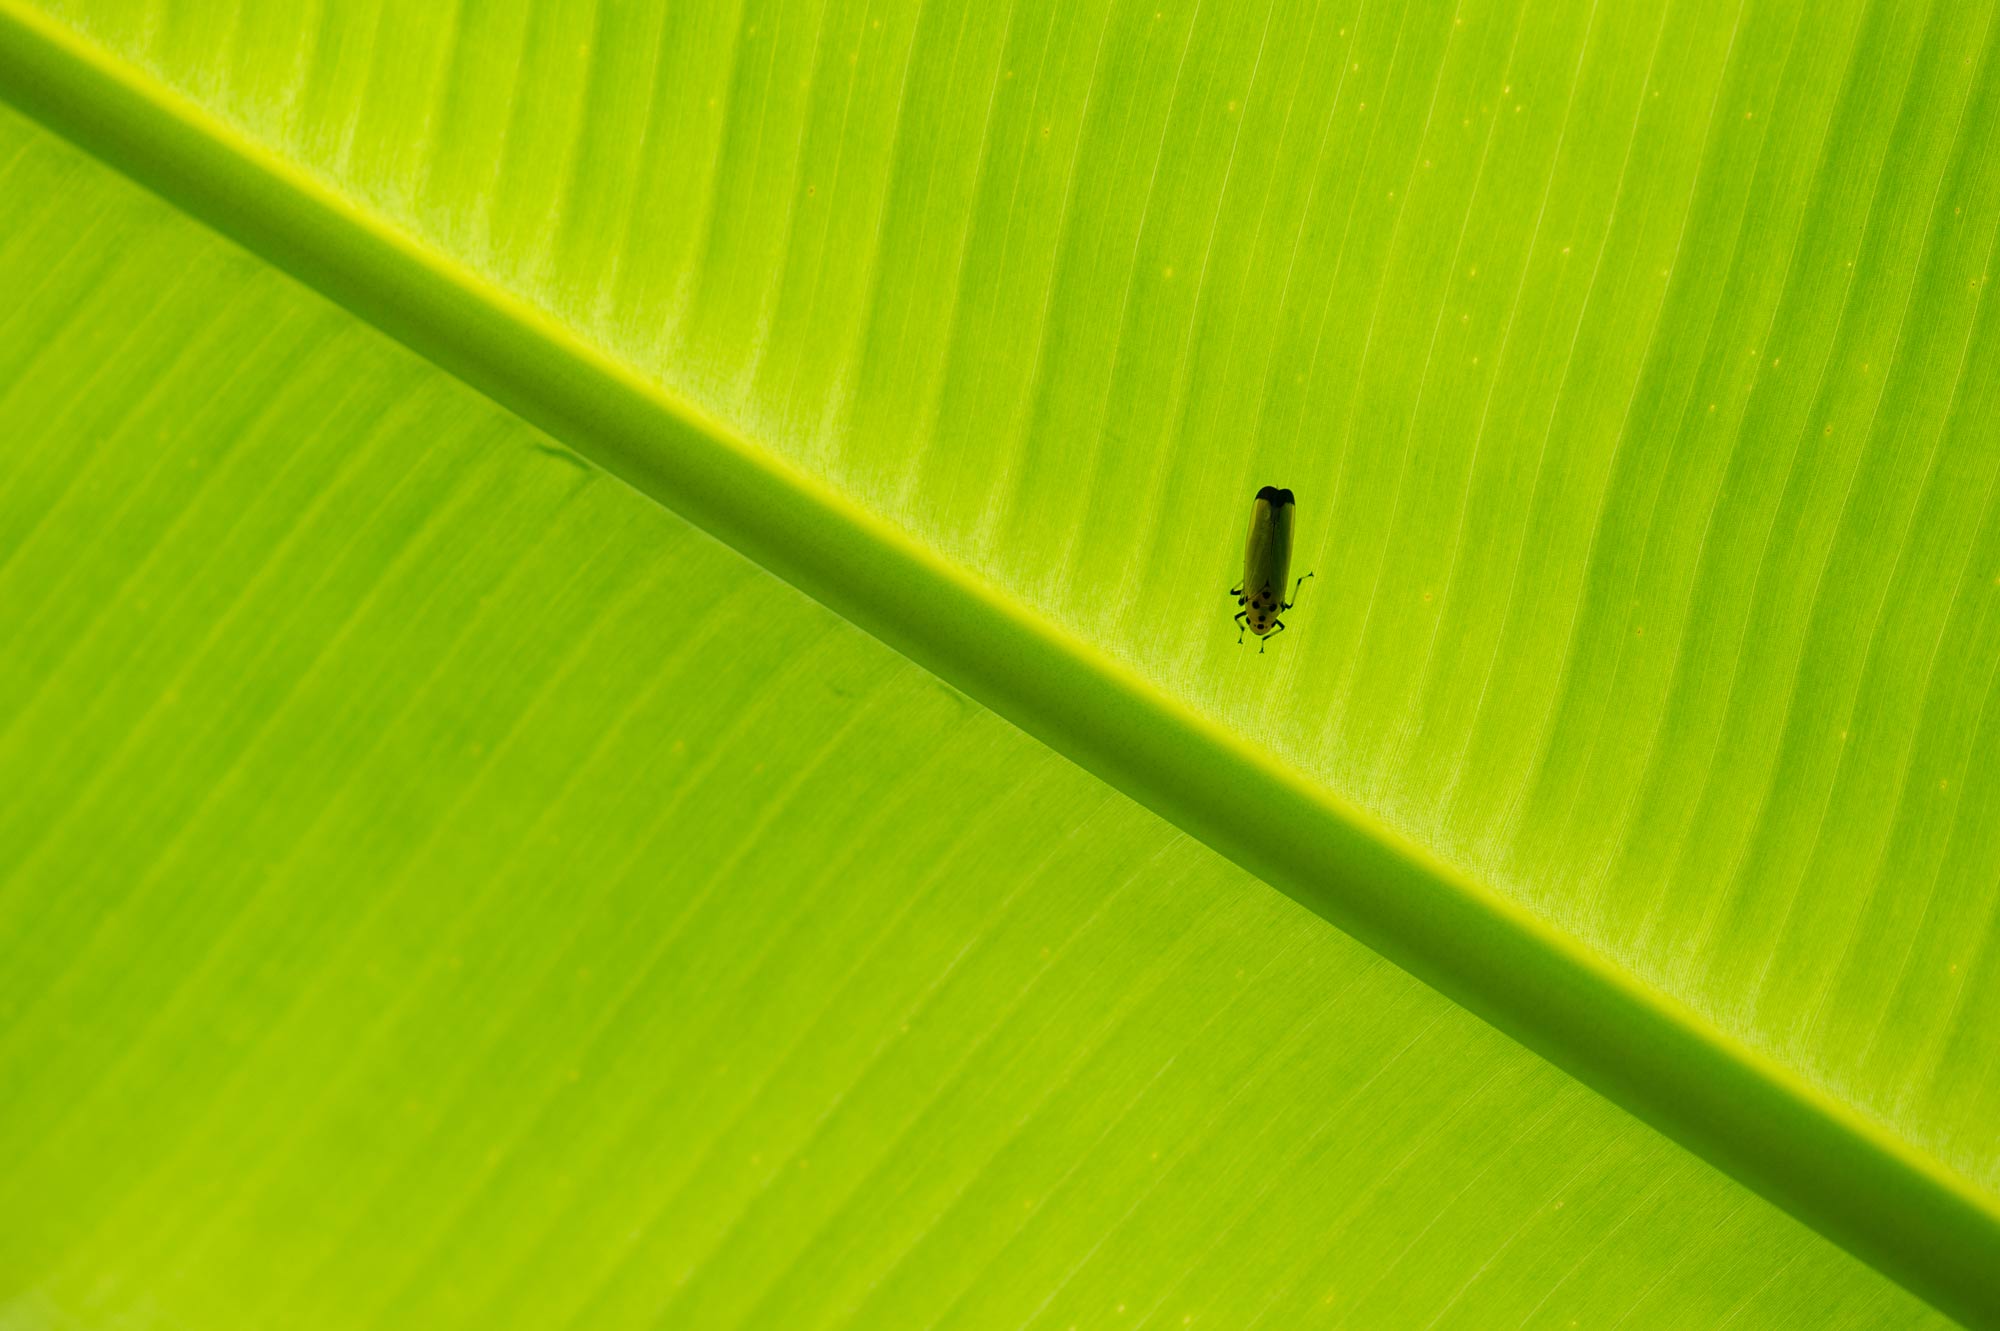 ツマグロオオヨコバイ 愛称はバナナ虫 虫の写真と生態なら昆虫写真図鑑 ムシミル